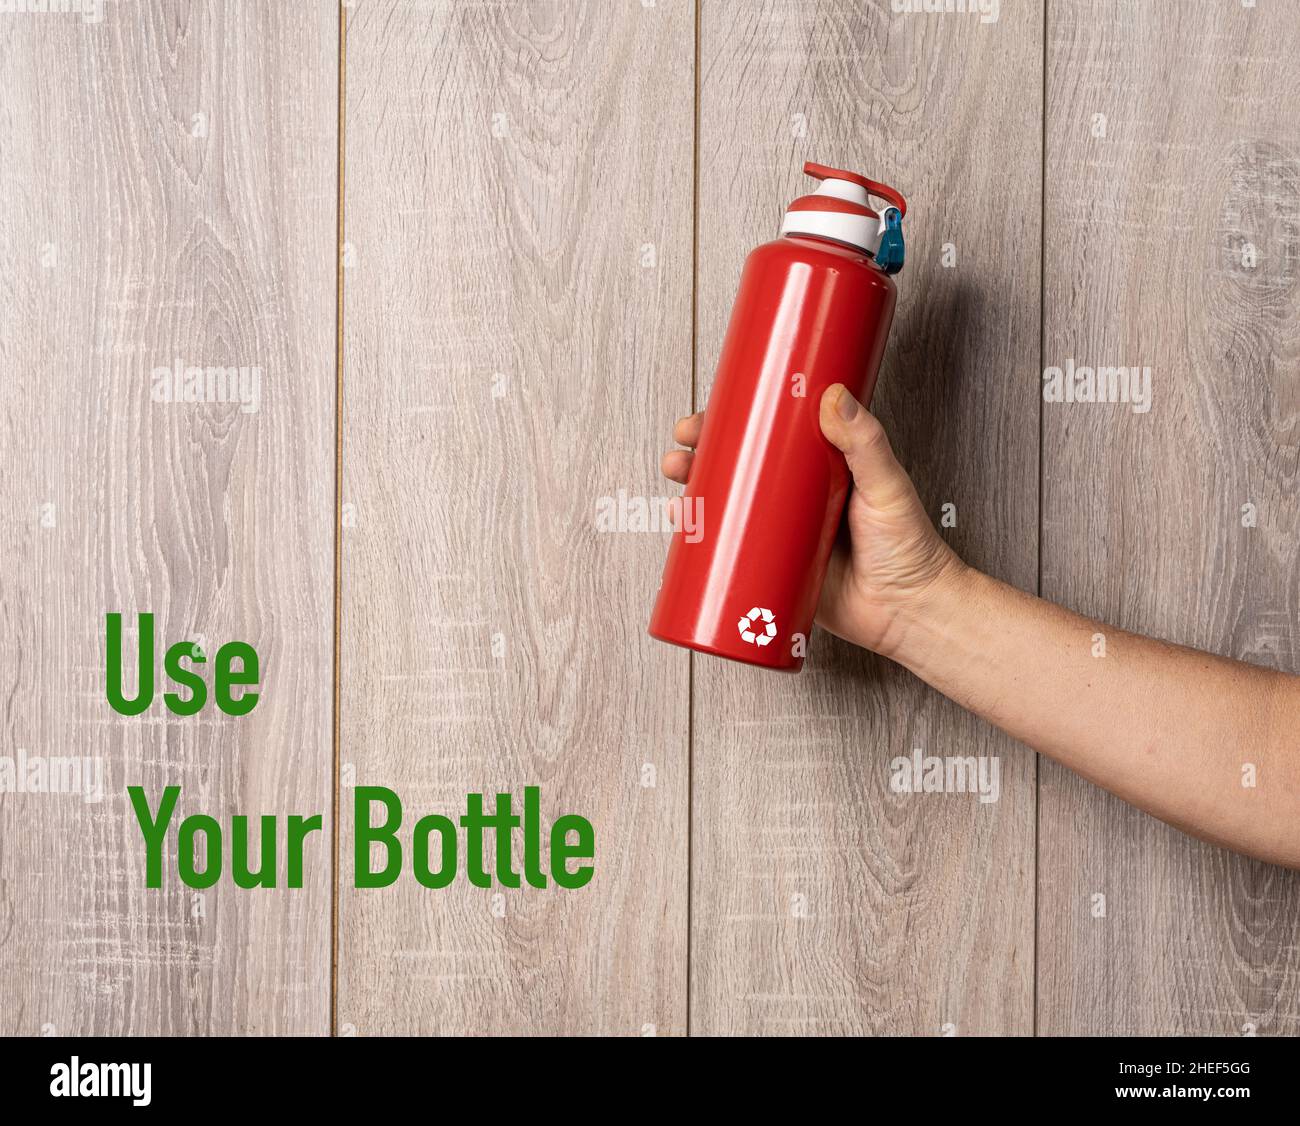 Eine Aluminiumflasche und eine Einladung zur Verwendung wiederverwendbarer Flaschen Stockfoto